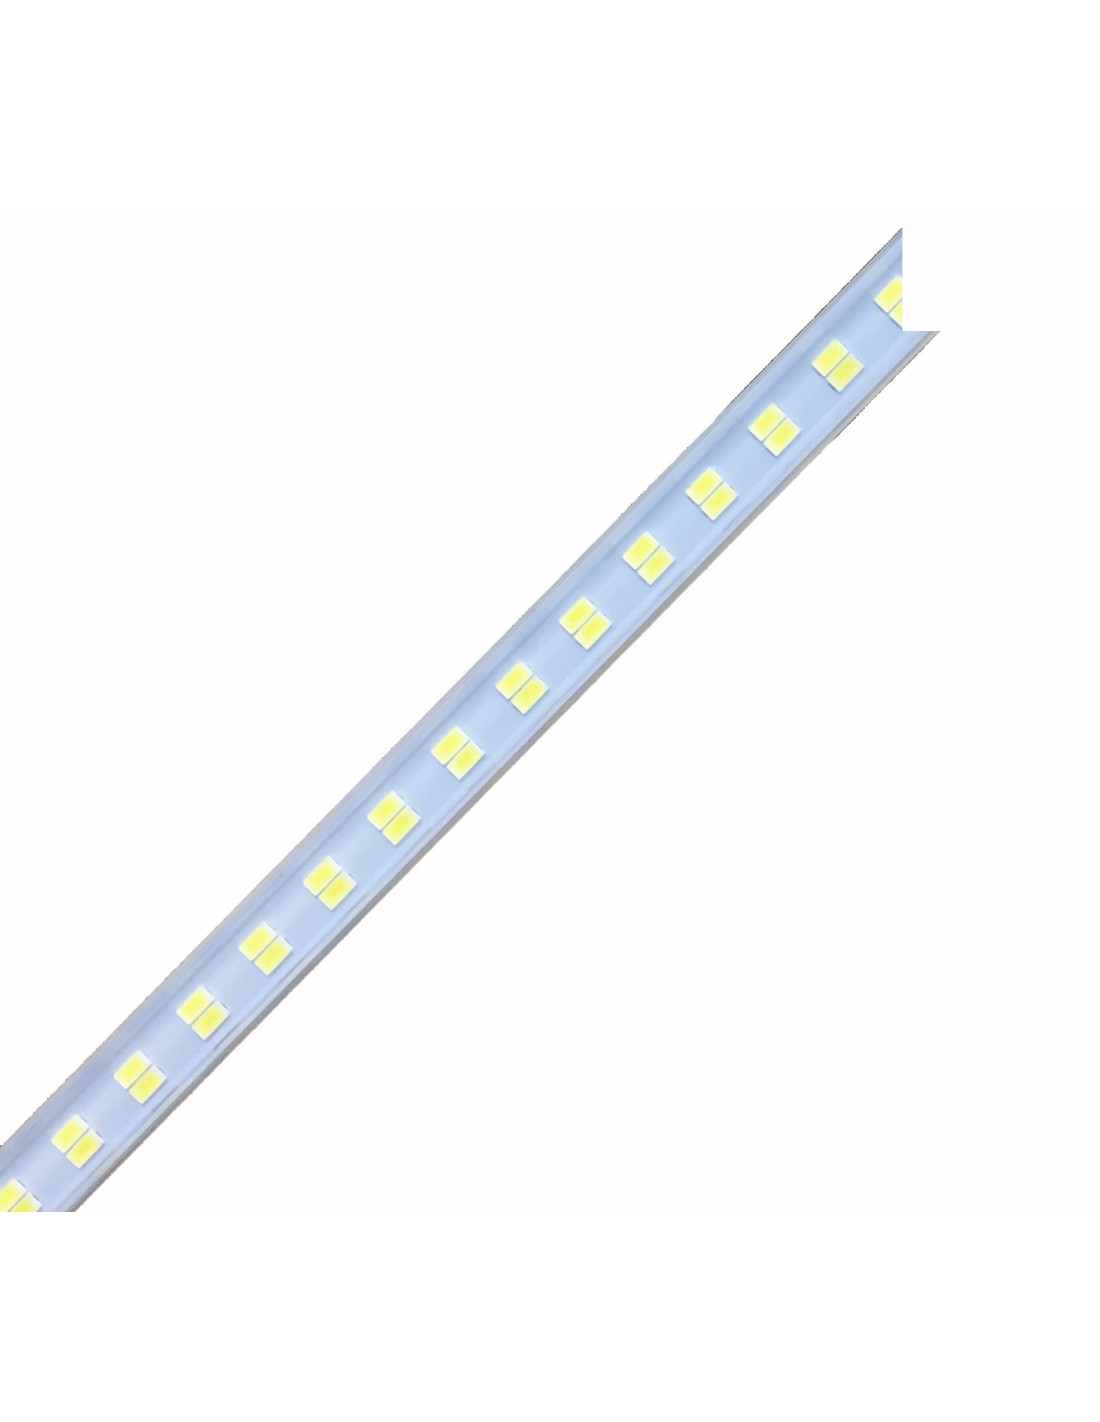 Iluminación de LED -Para mod. FESTIVAL-8 - disponible sólo con el plan de servicio de plexiglass